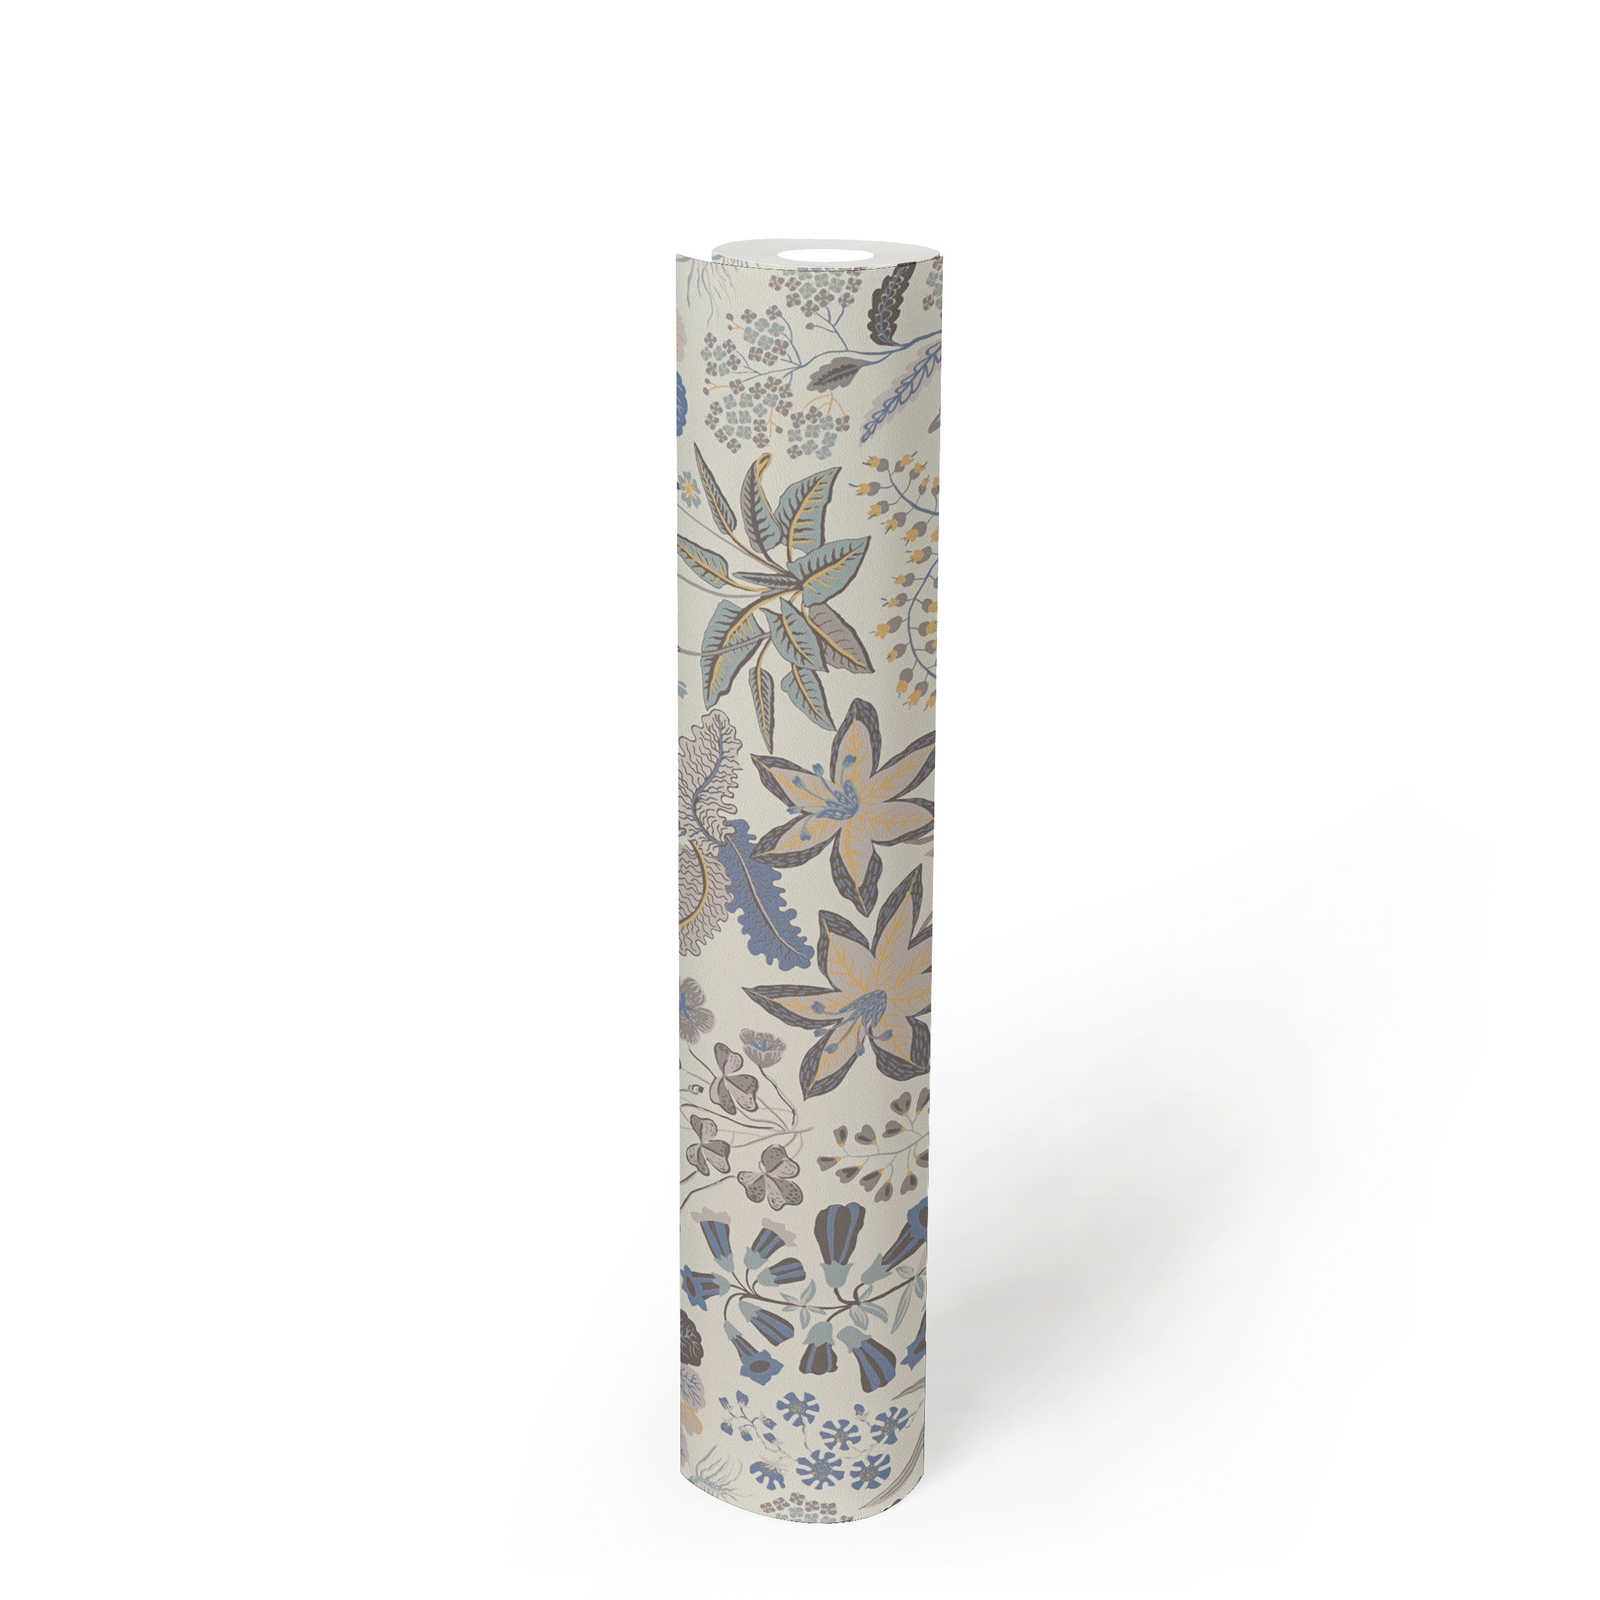             Papel pintado no tejido con un detallado motivo floral - gris, azul, crema
        